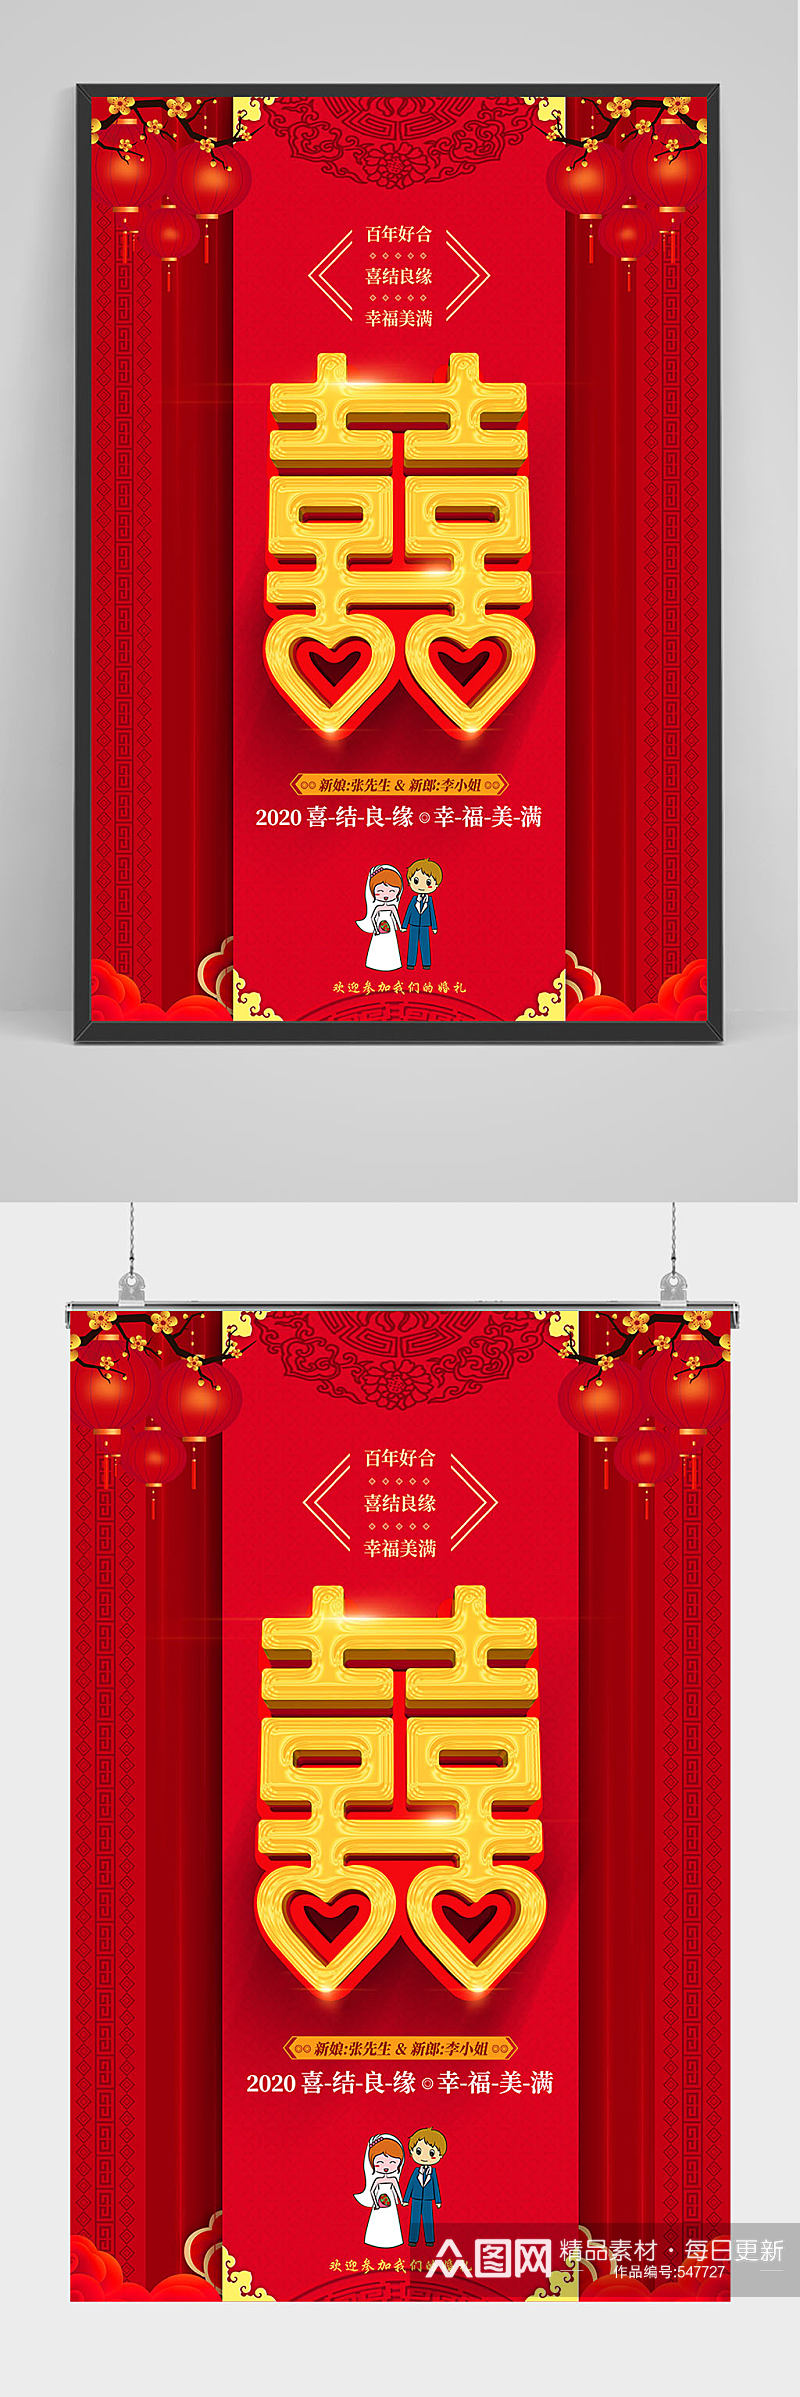 红色喜庆双喜结婚海报设计婚礼海报素材